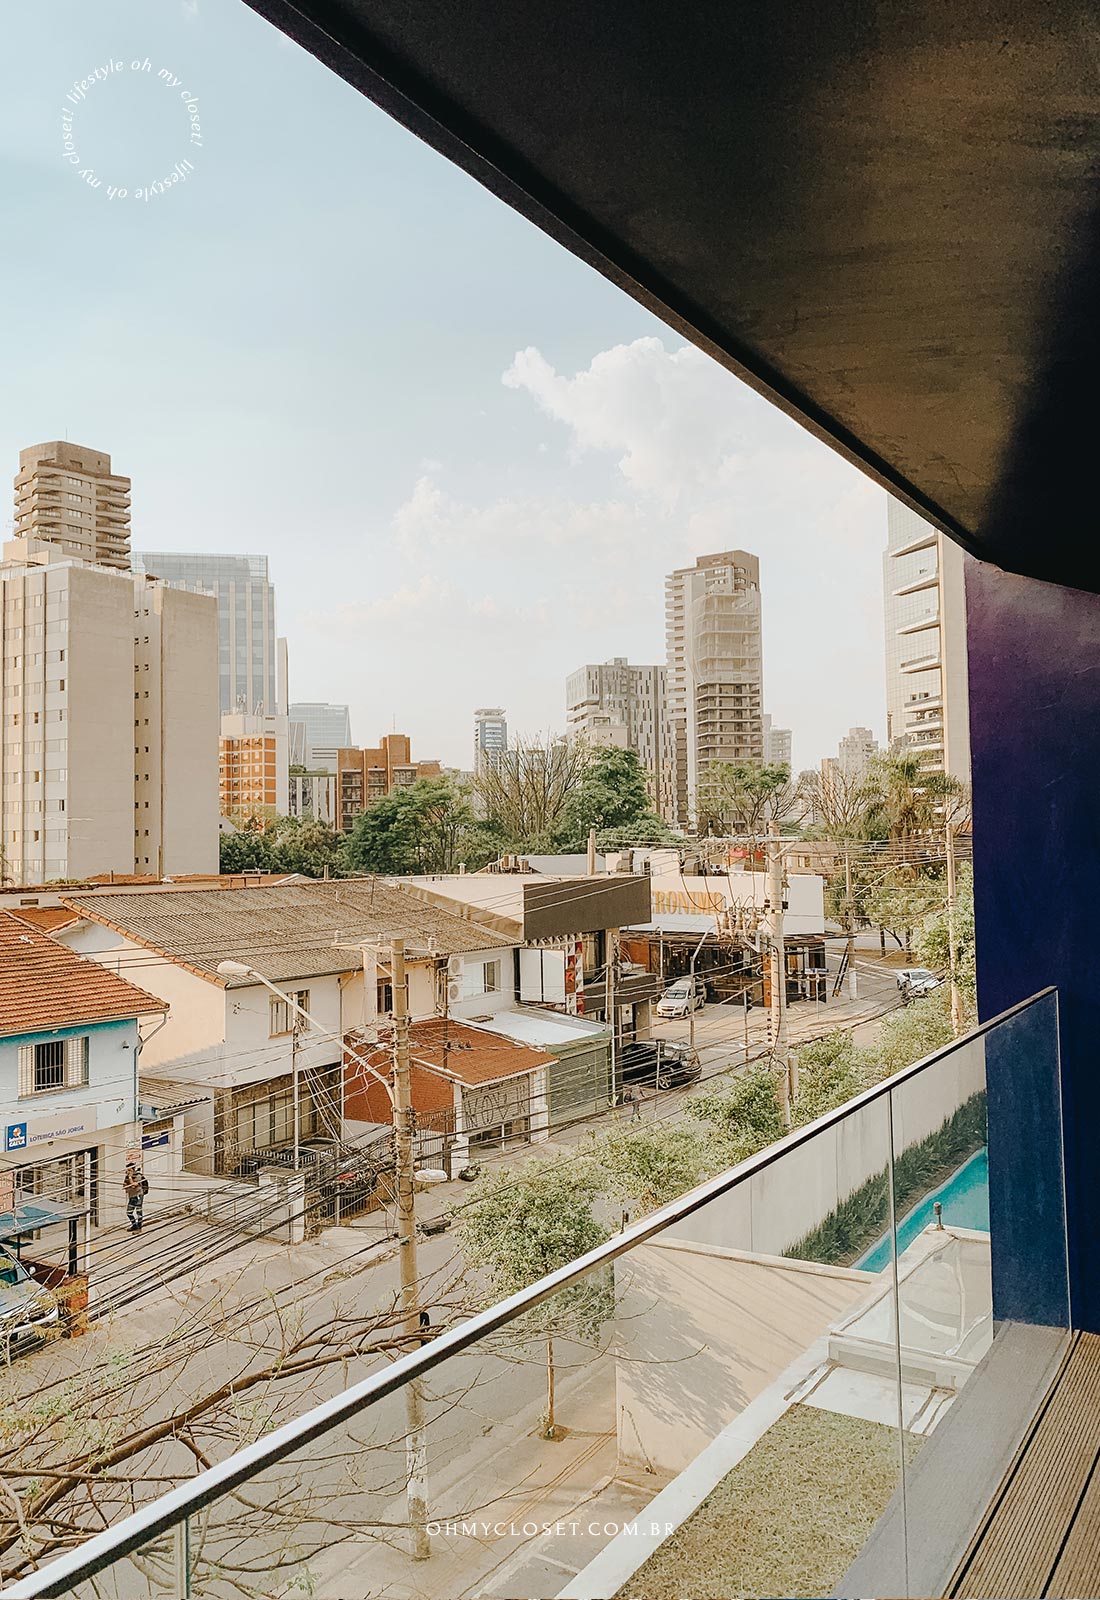 Vista da rua com a Avenida Brigadeiro Faria Lima ao fundo.